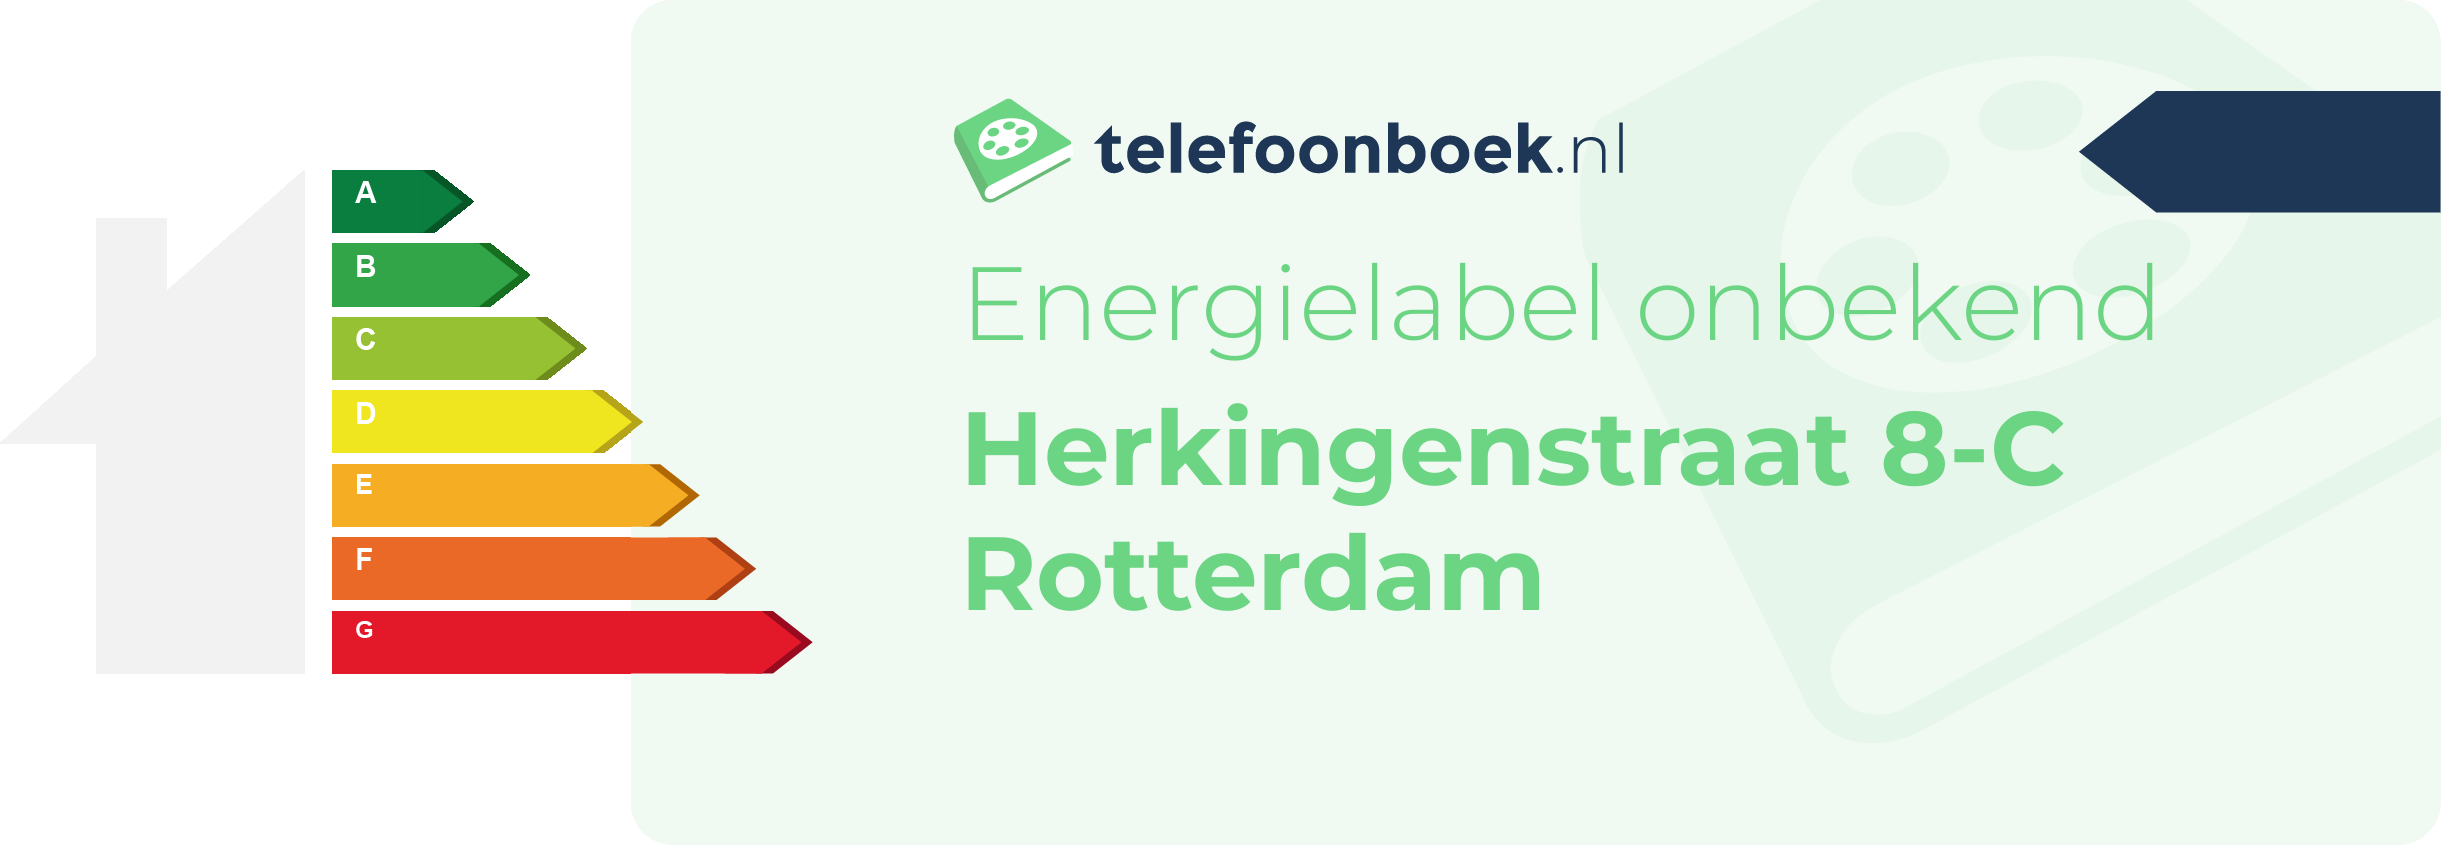 Energielabel Herkingenstraat 8-C Rotterdam